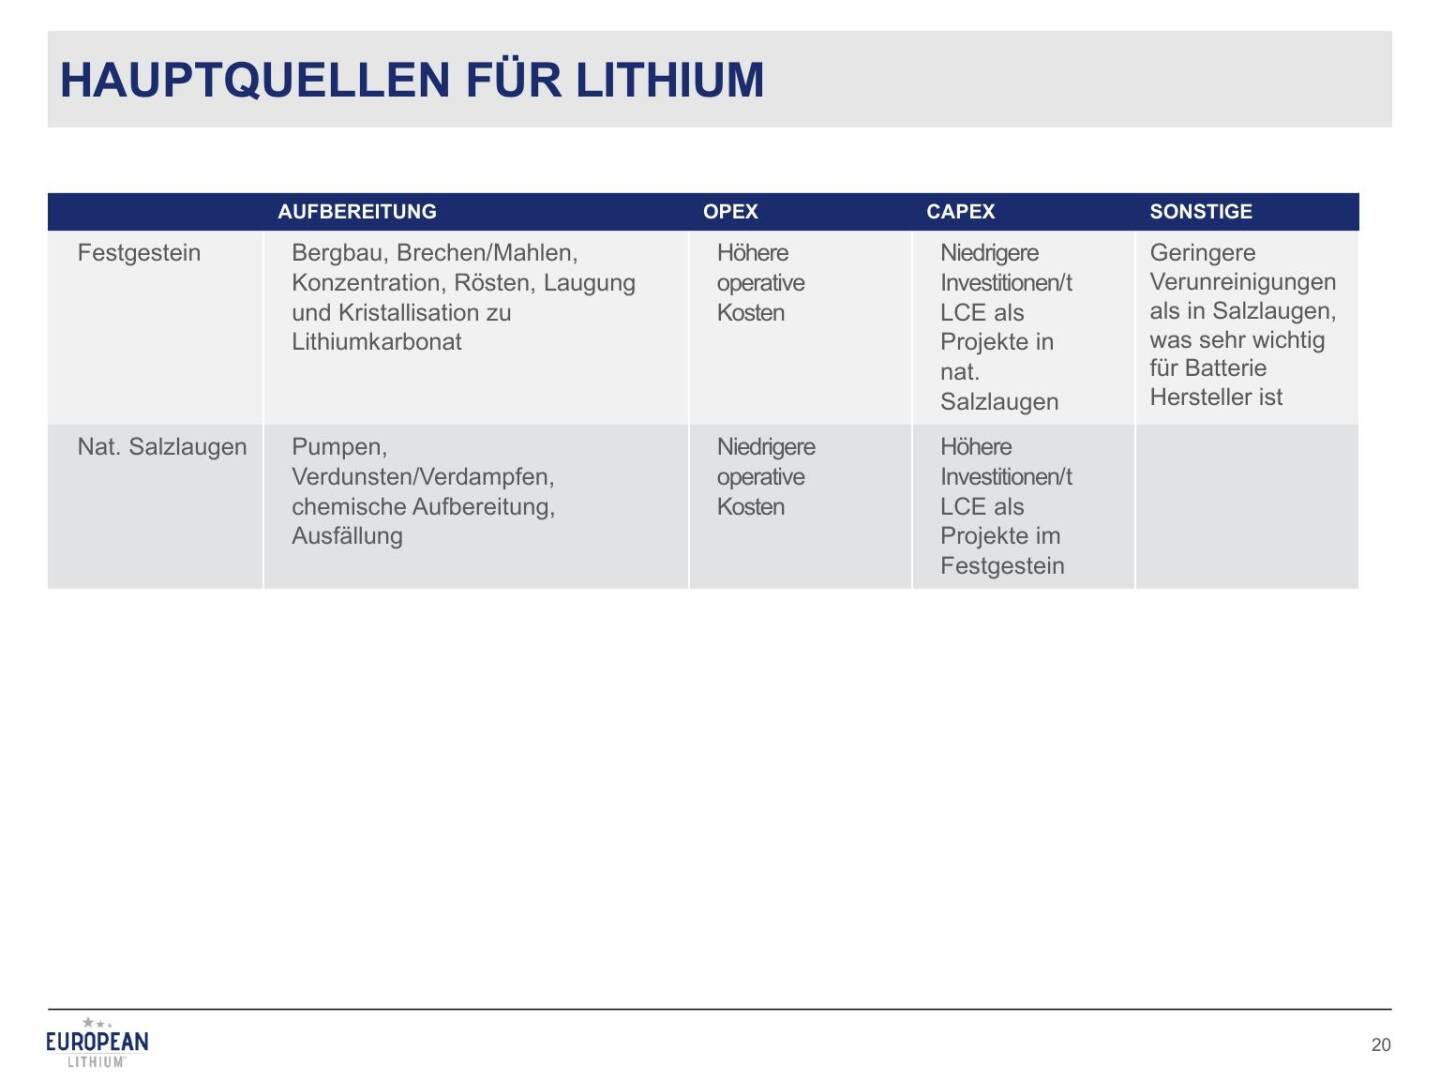 Präsentation European Lithium - Hauptquellen für Lithium